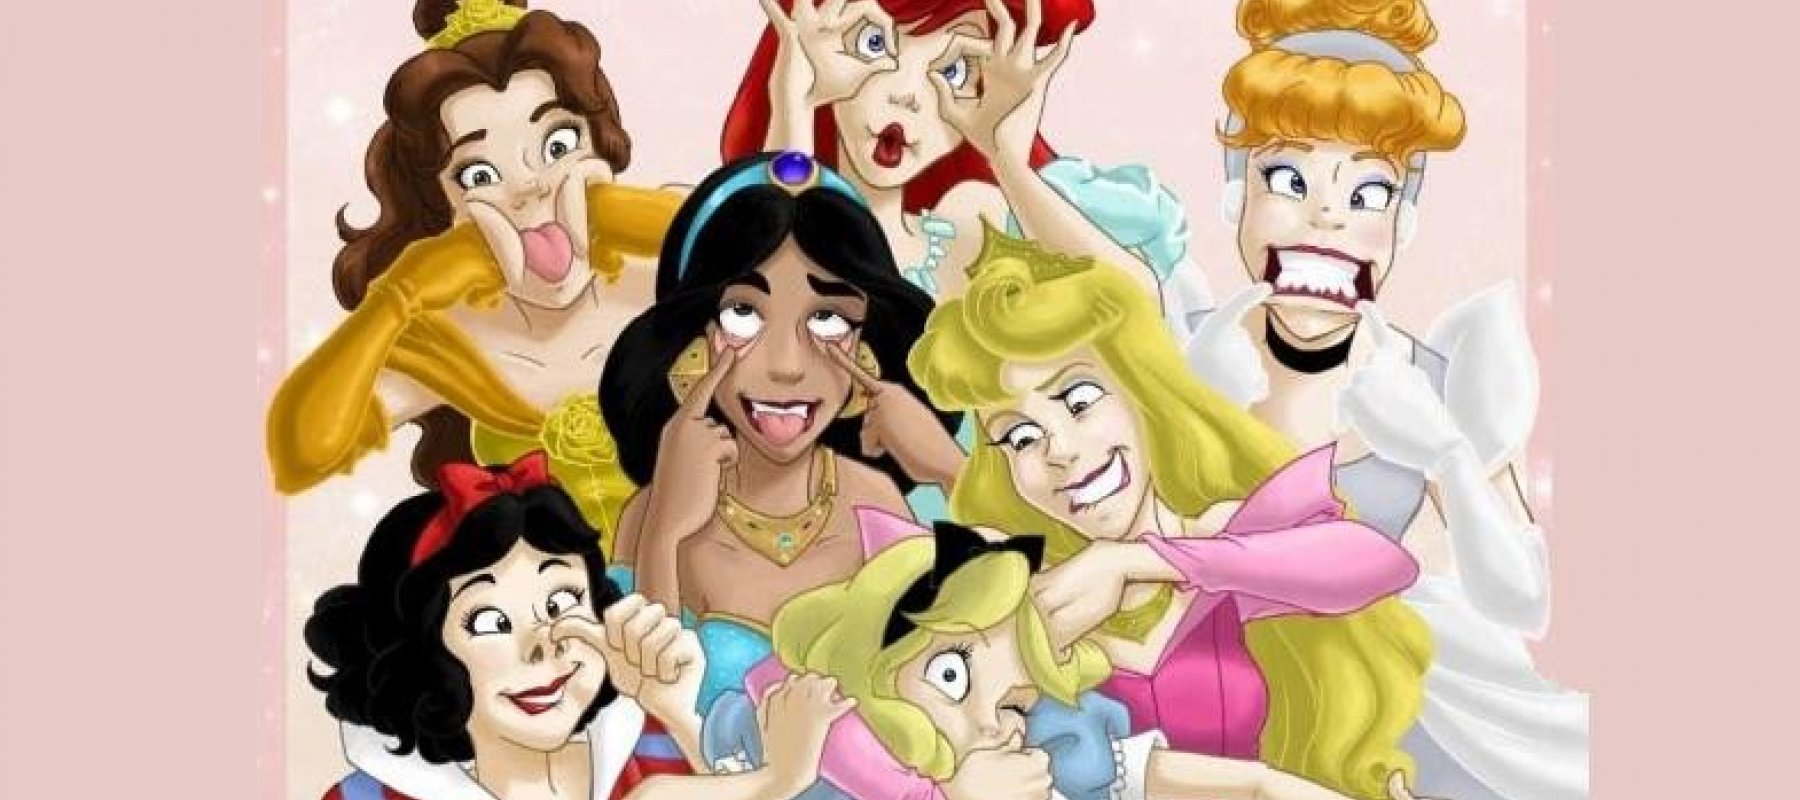 Imbécil Suburbio Posible Evolución de las princesas Disney - Segunda parte | MíraLES